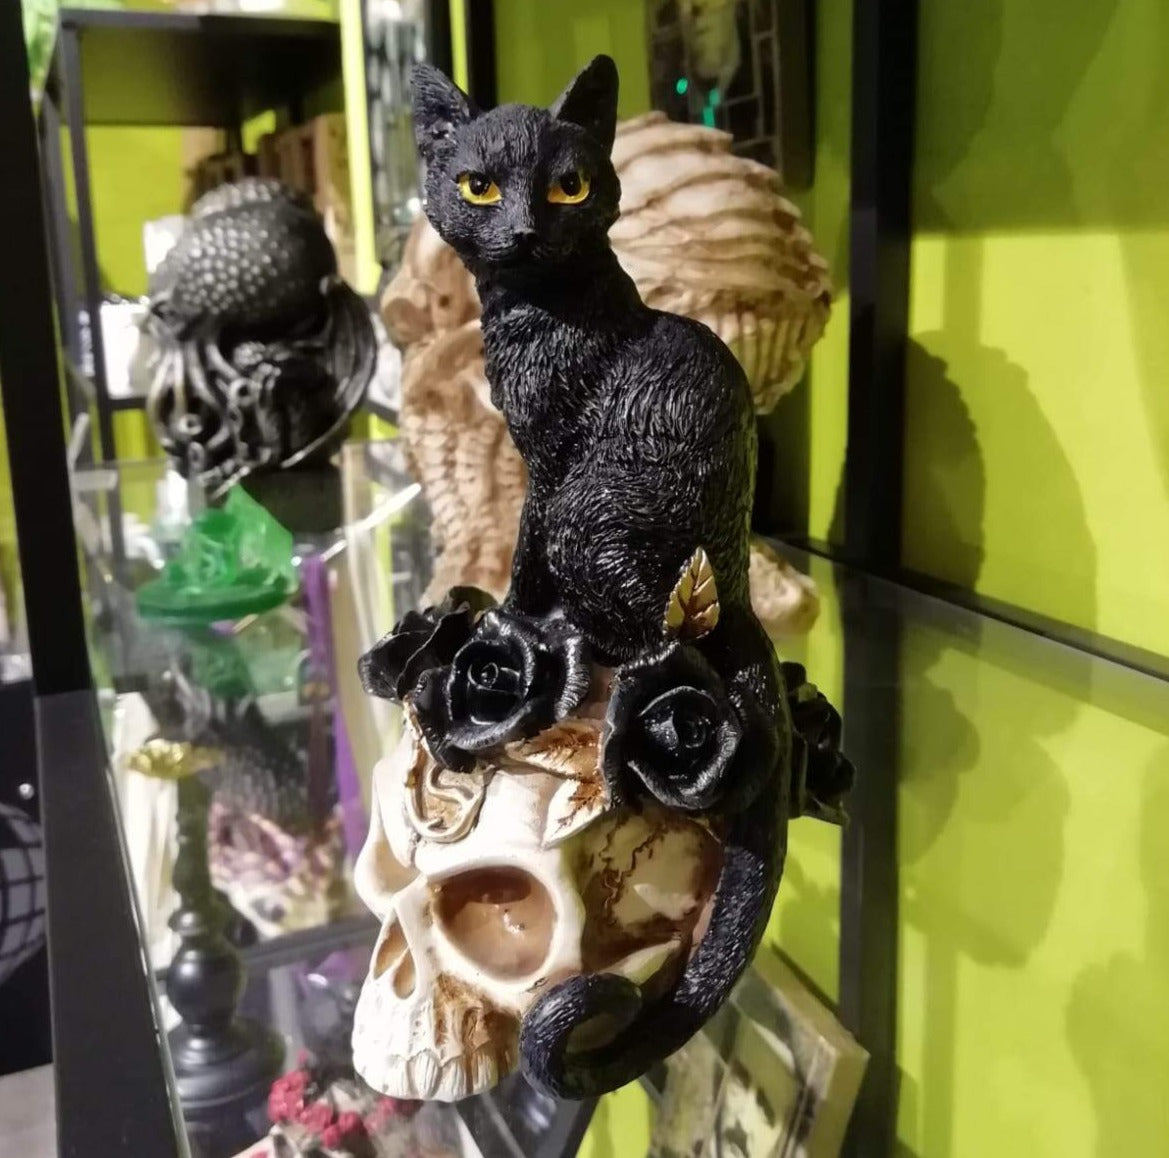 Gato negro, cráneo y rosas